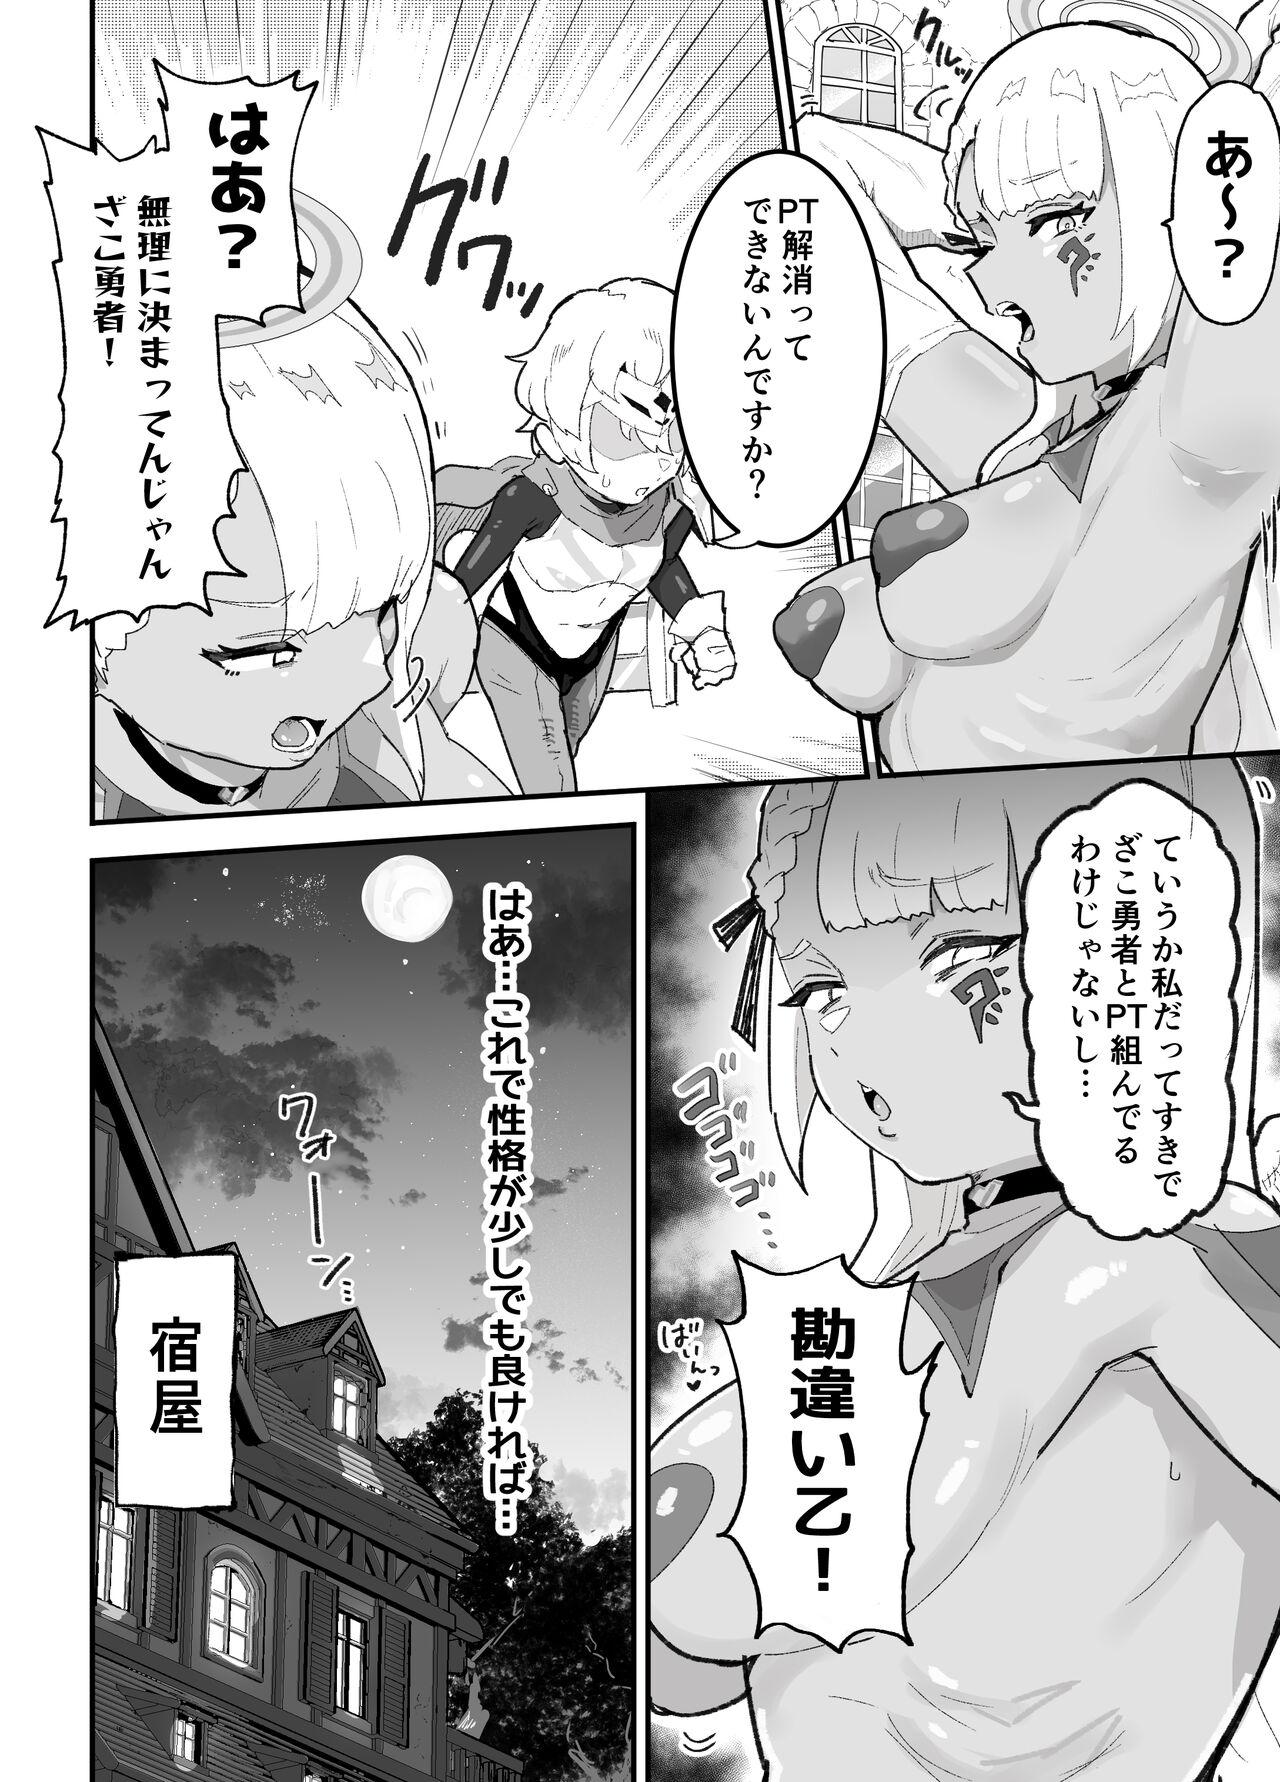 Realsex boku no PT wa jōtai ijō taisei ōru 0 no tenshi-sama shika inai - Original Straight Porn - Page 5